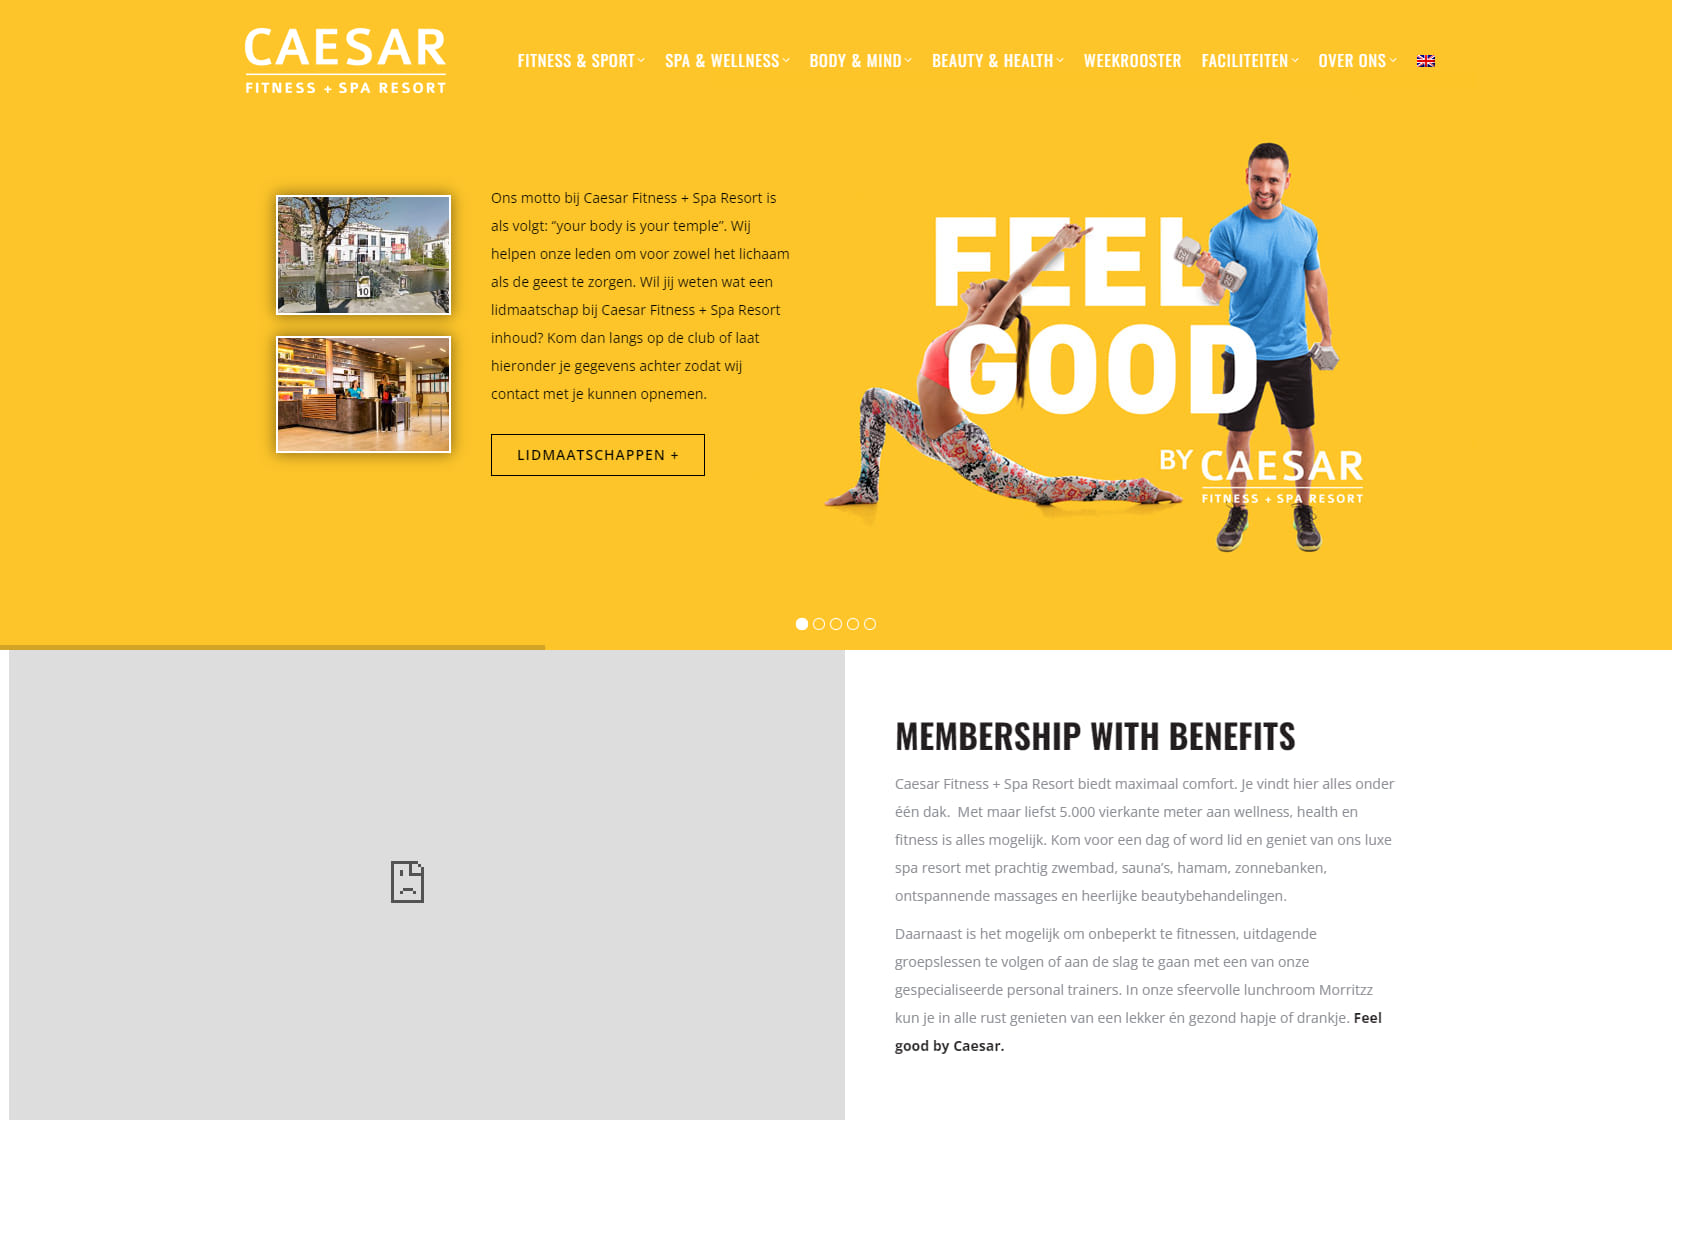 Caesar Fitness + Spa Resort